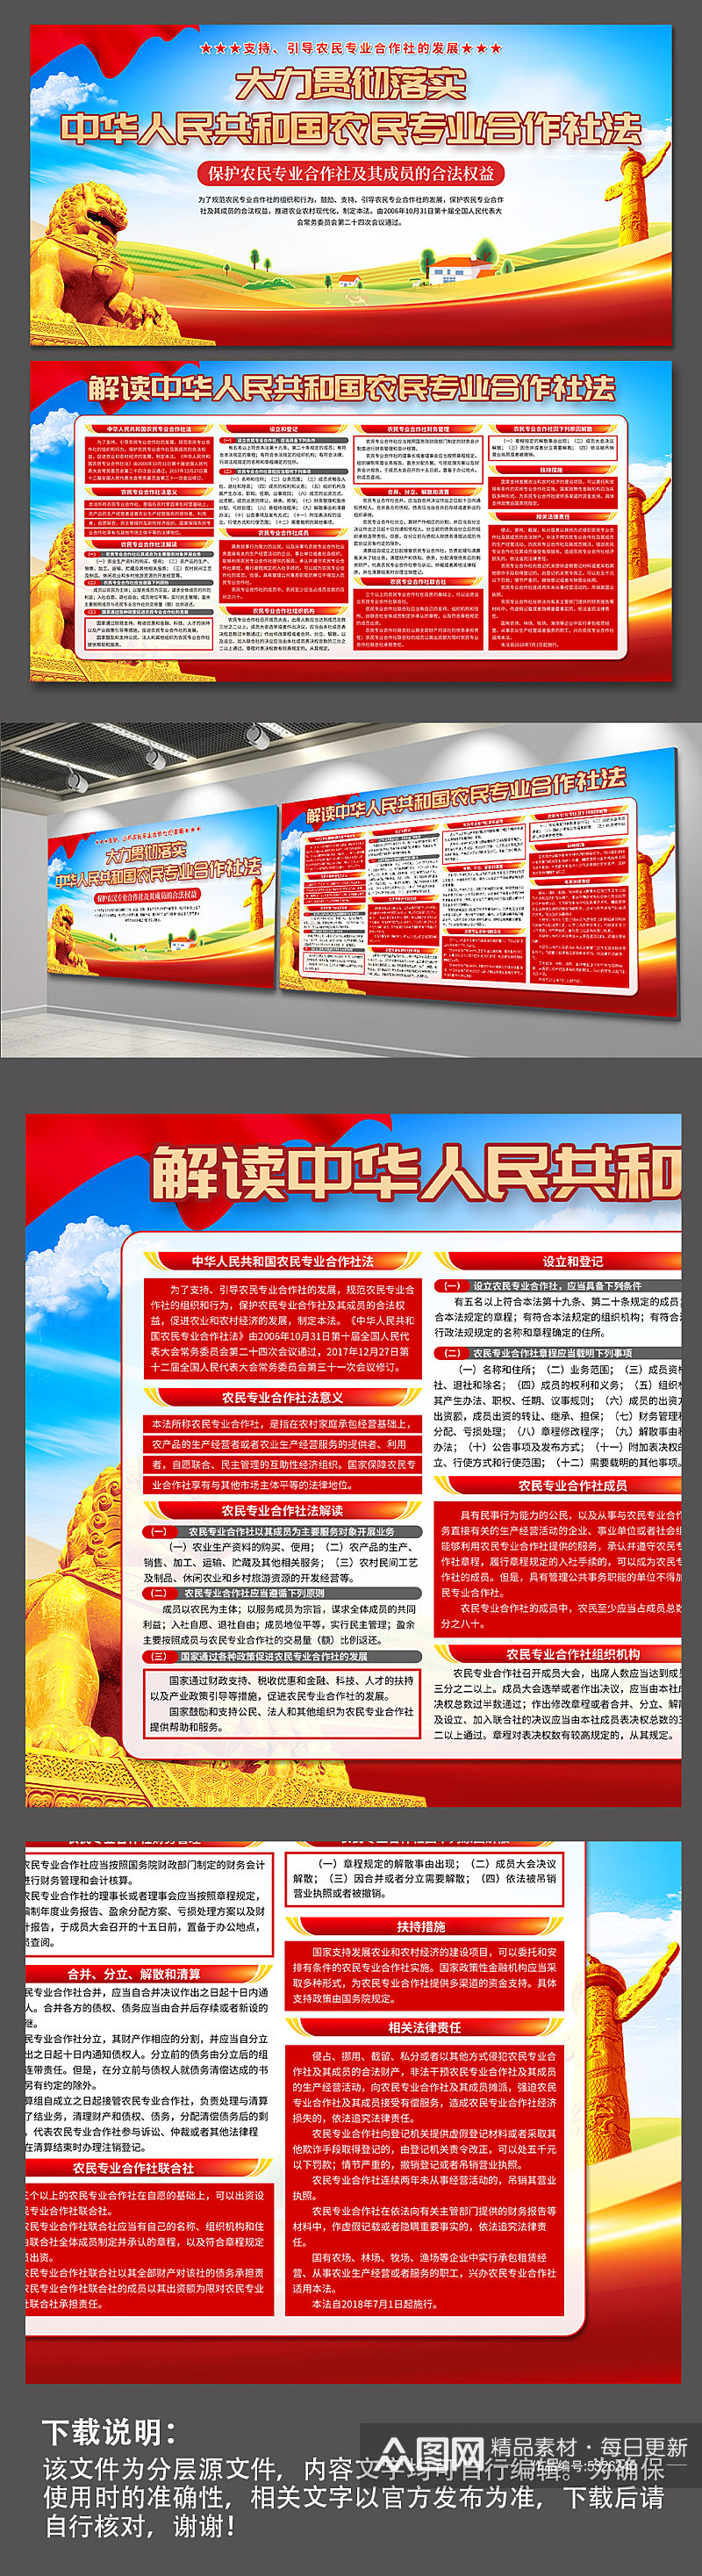 蓝色中华人民共和国农民专业合作社法展板素材